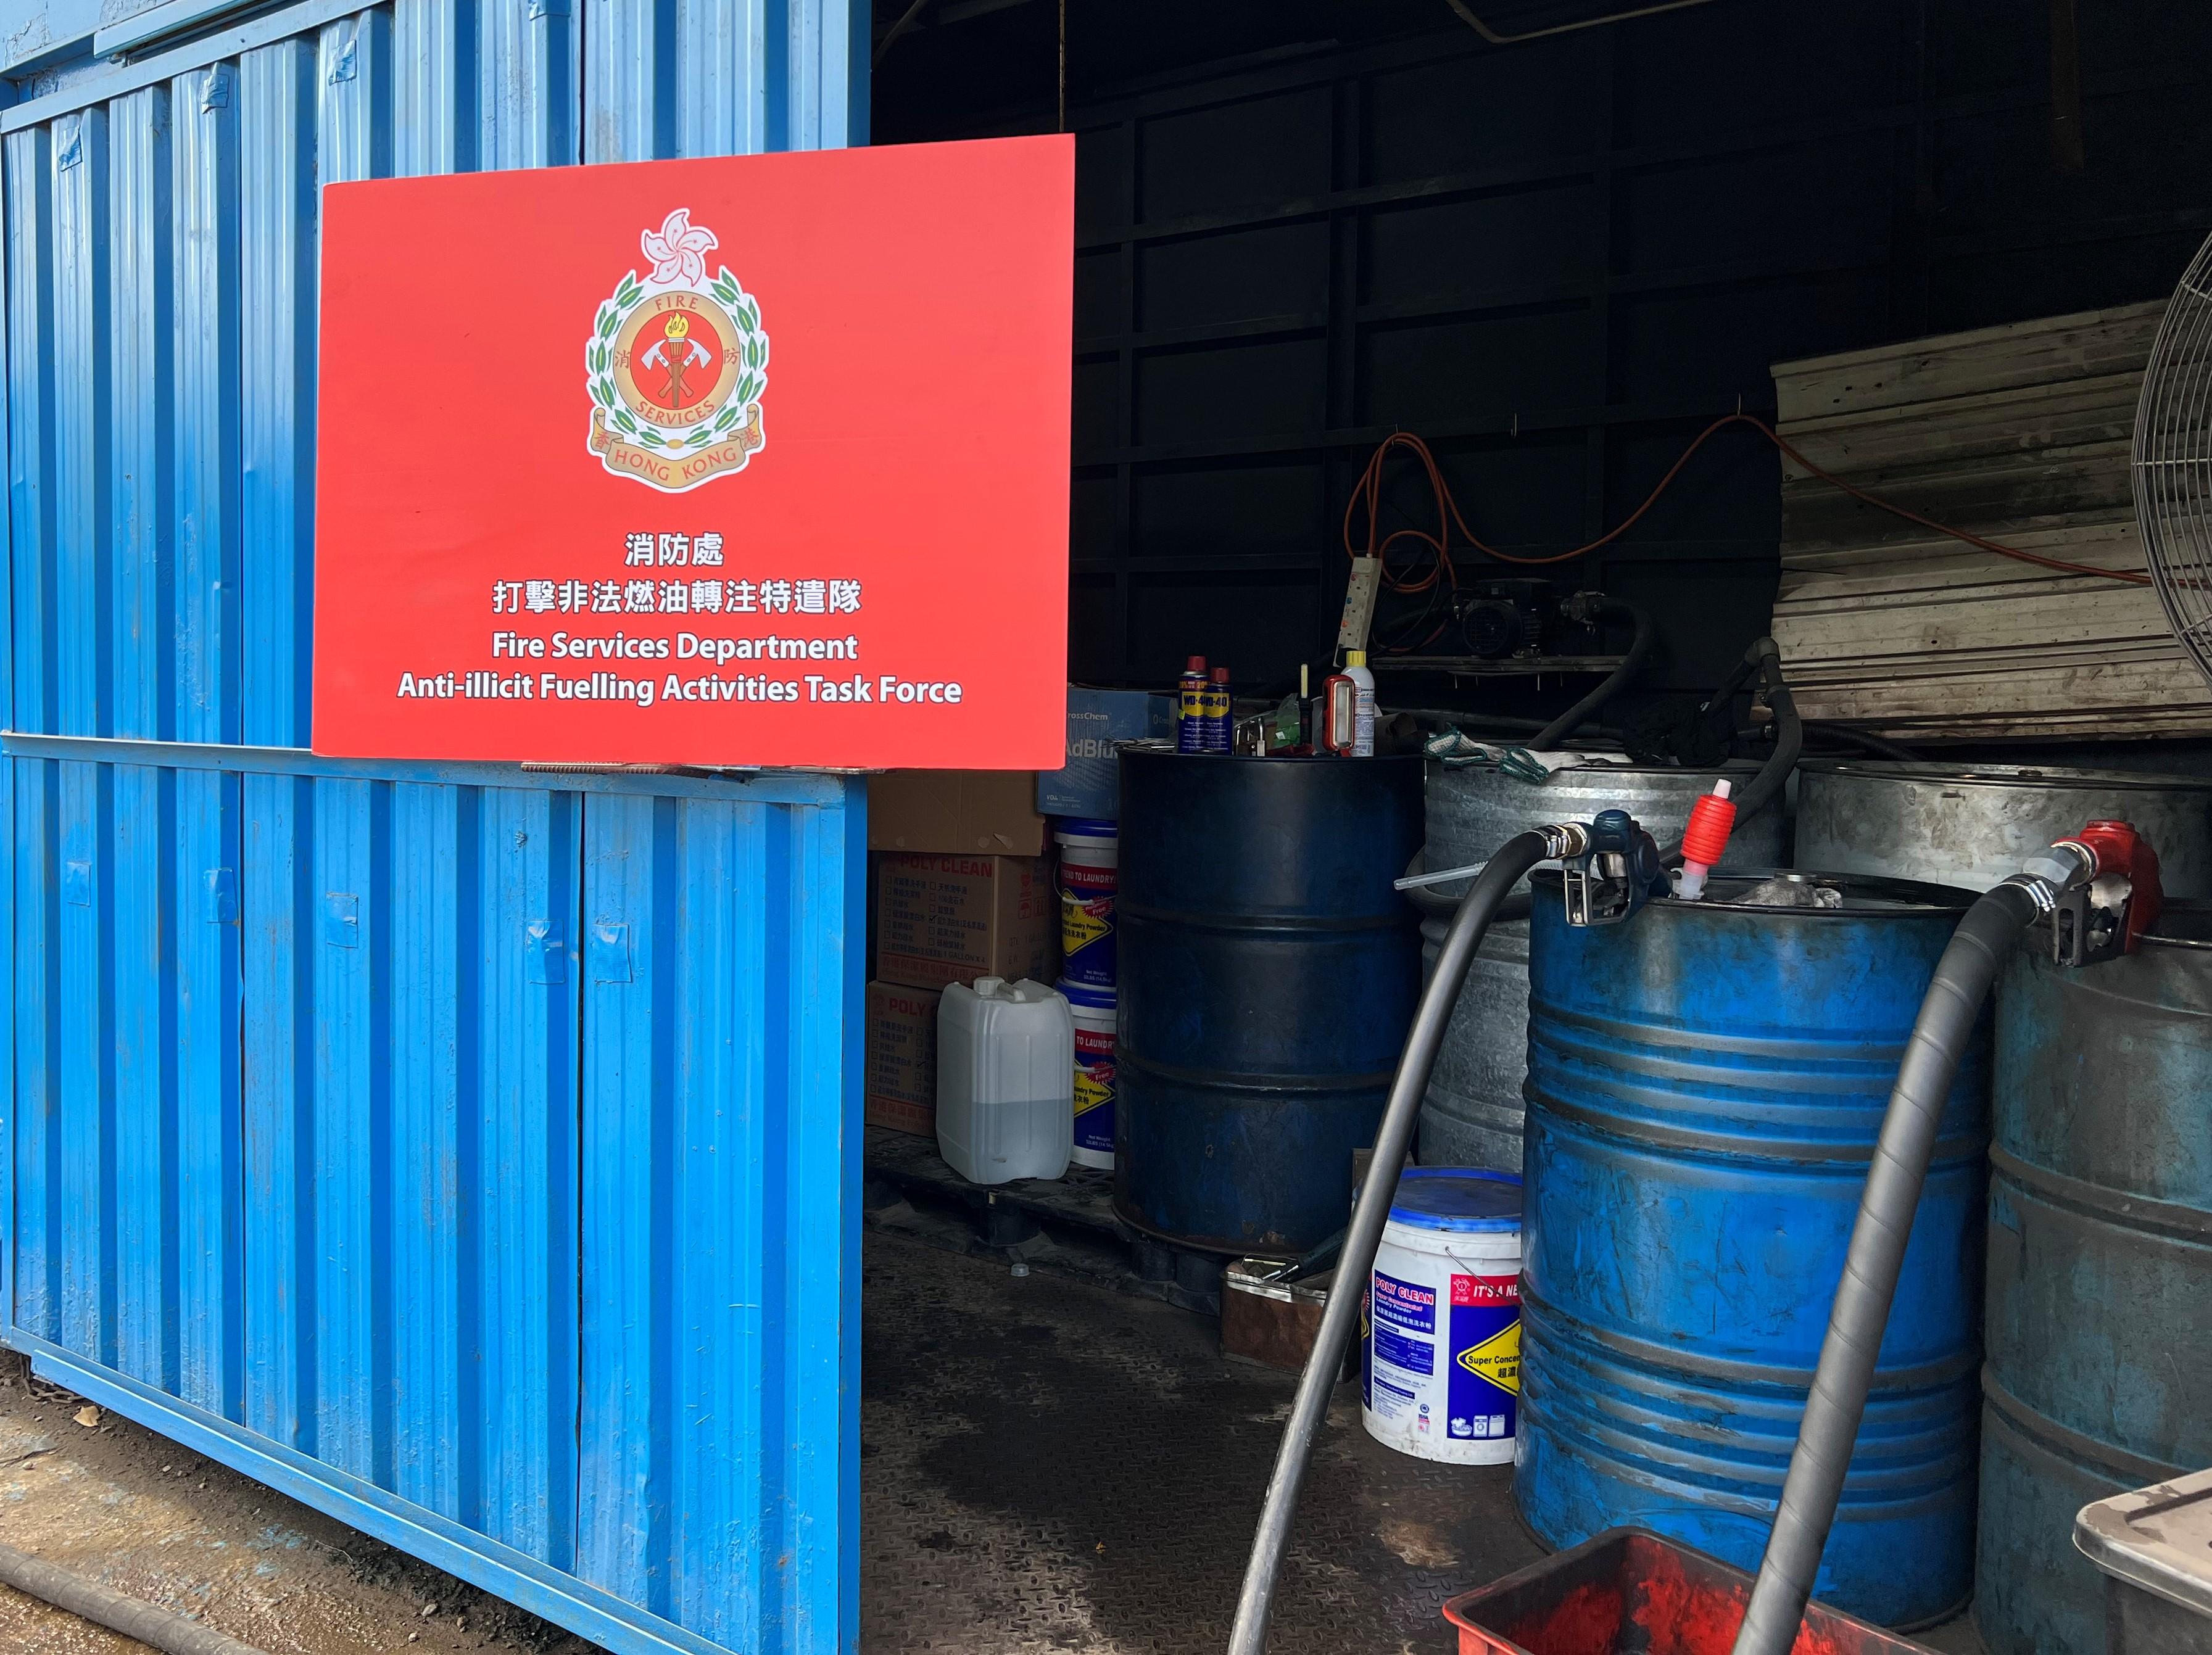 消防處聯同警務處及香港海關今日（一月二十六日）採取代號名為「冬雷」的聯合行動，打擊非法加油活動。圖示懷疑非法加油站的入油設備及燃油儲存桶。